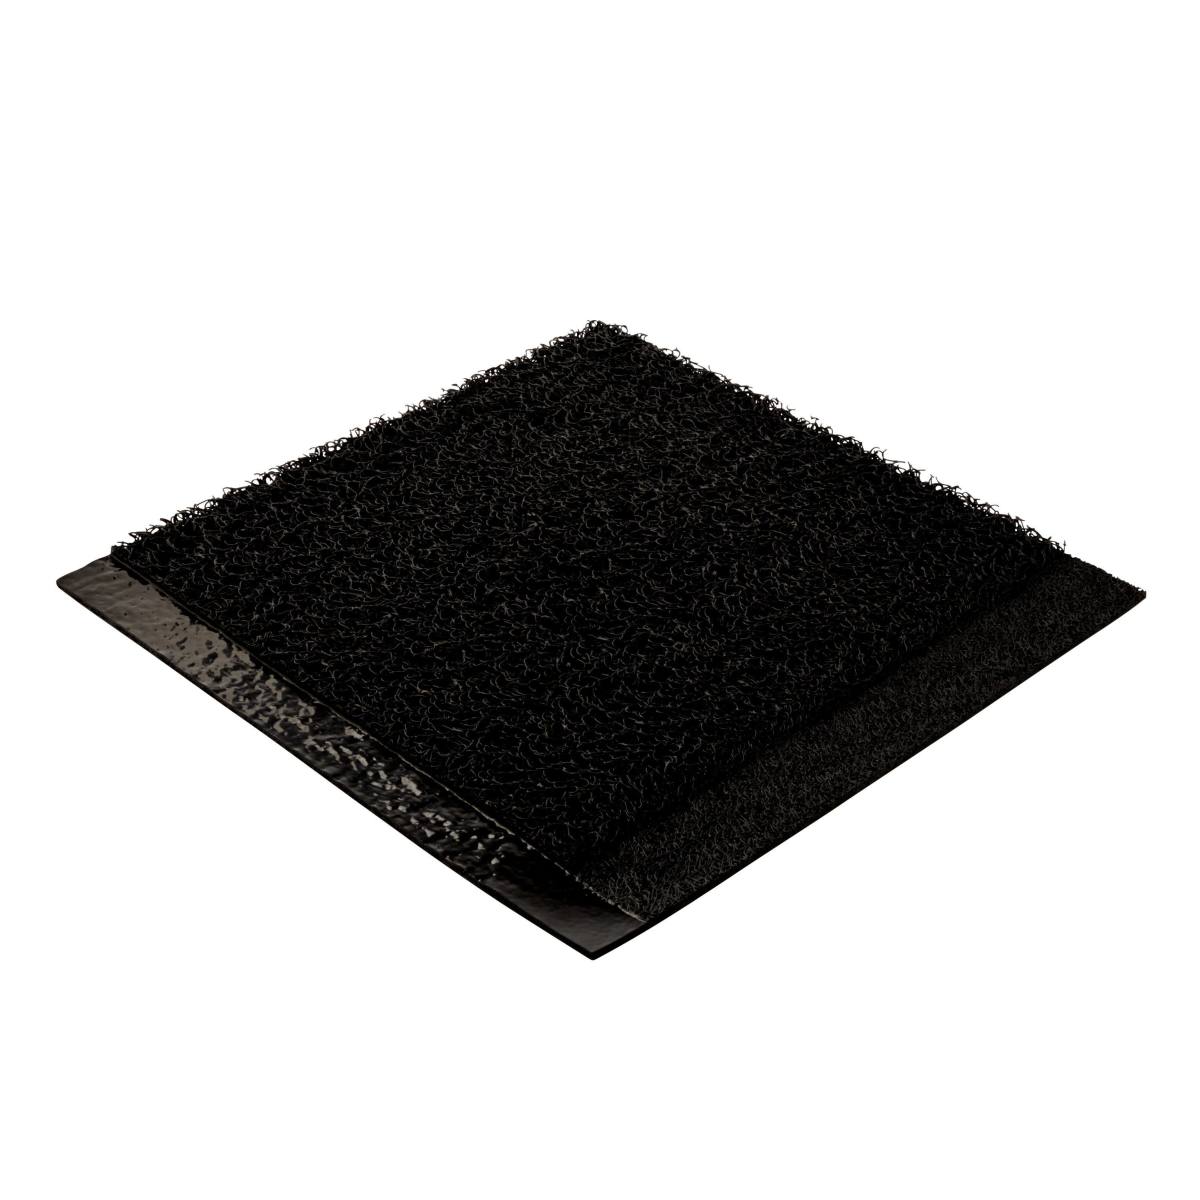 3M Safety-Walk standing comfort mat, black, 914 mm x 3 m, 3270E